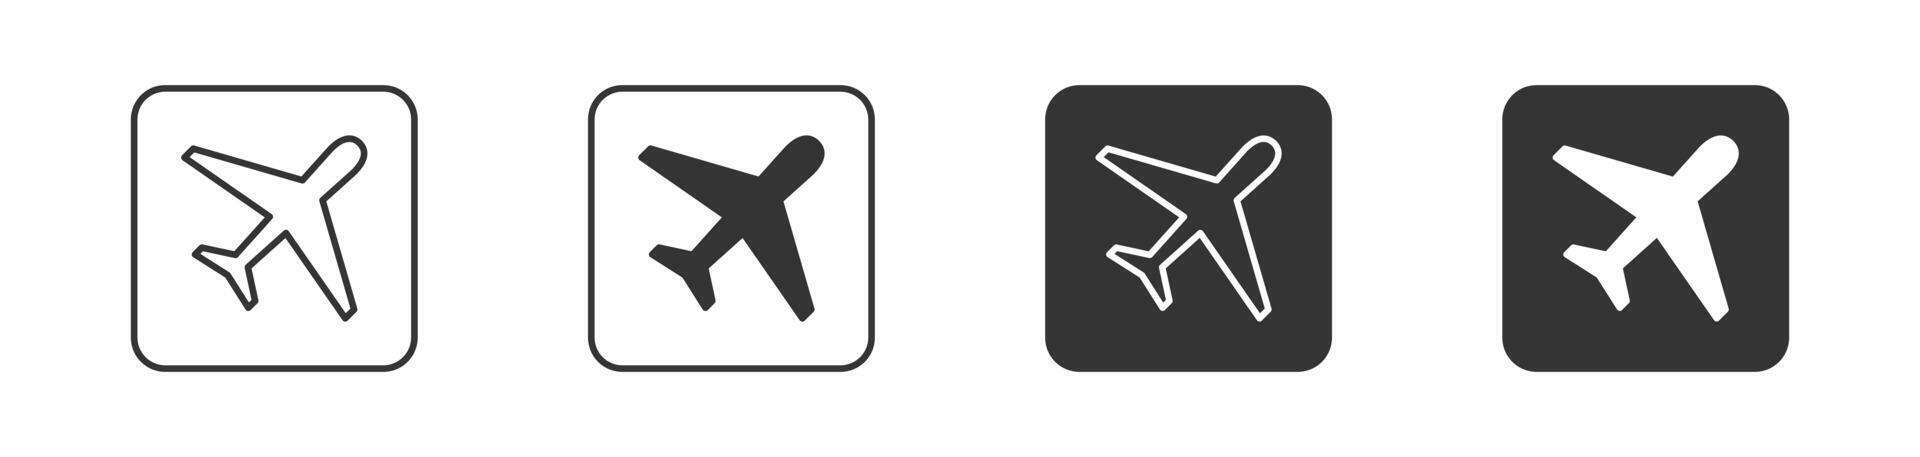 avião ícone. voar transporte símbolo. vetor ilustração.